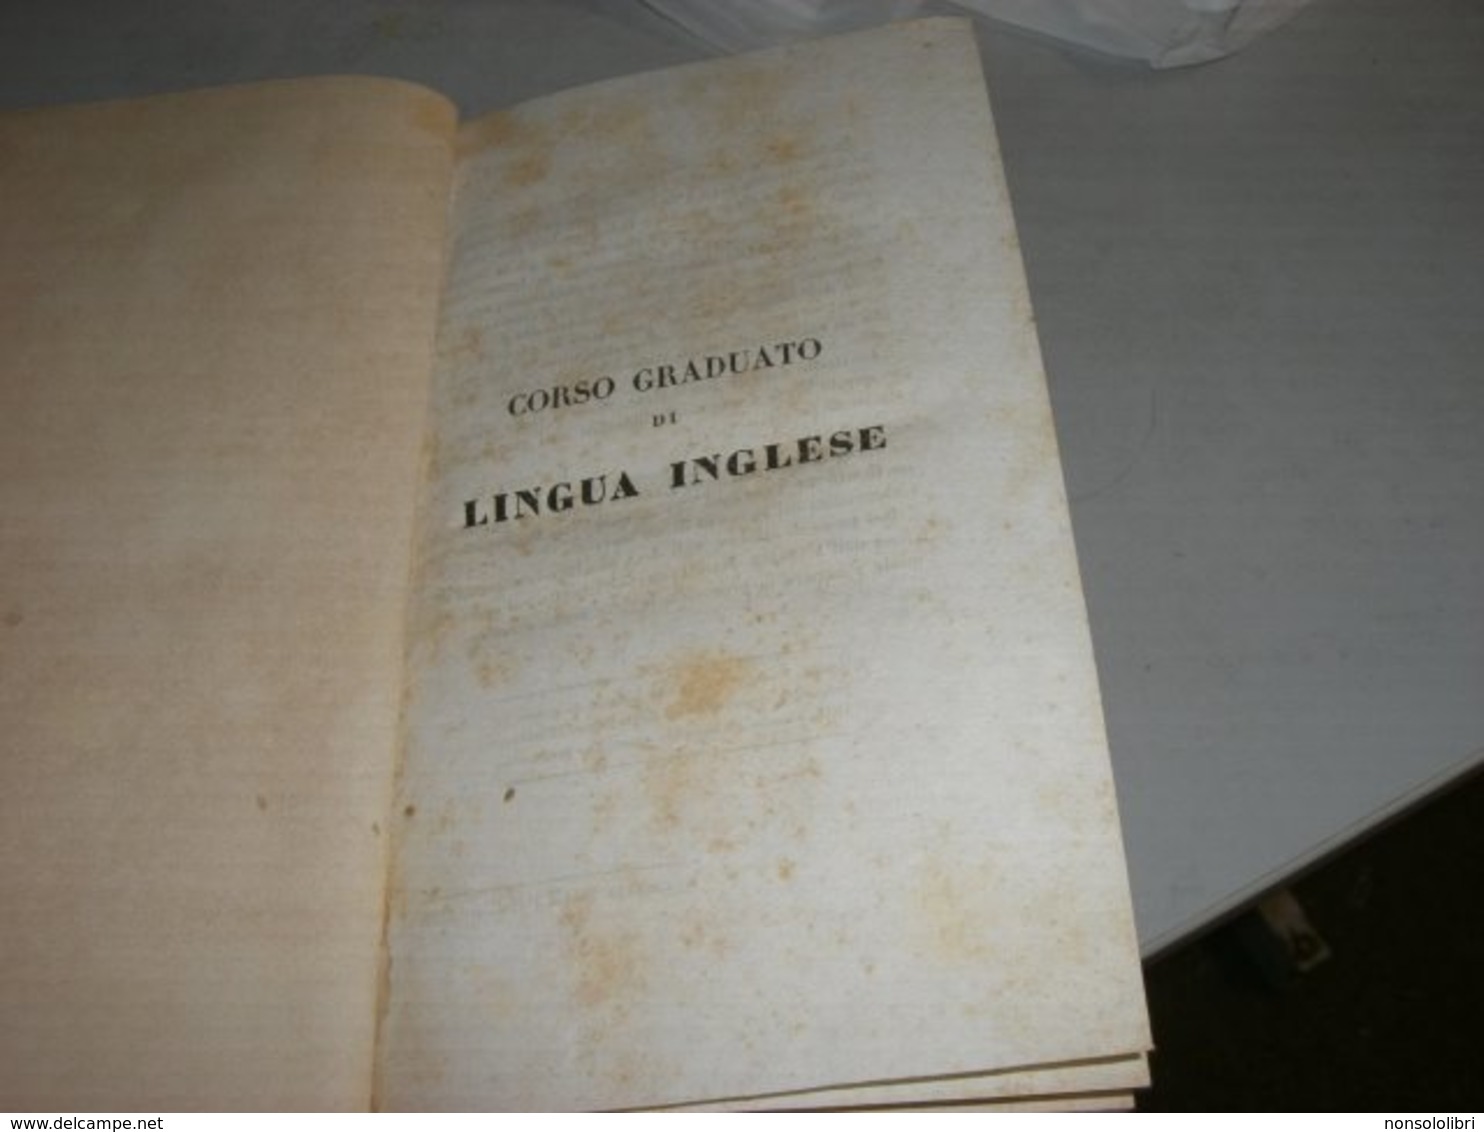 LIBRO CORSO GRADUATO DI LINGUA INGLESE 1840 - Libri Antichi